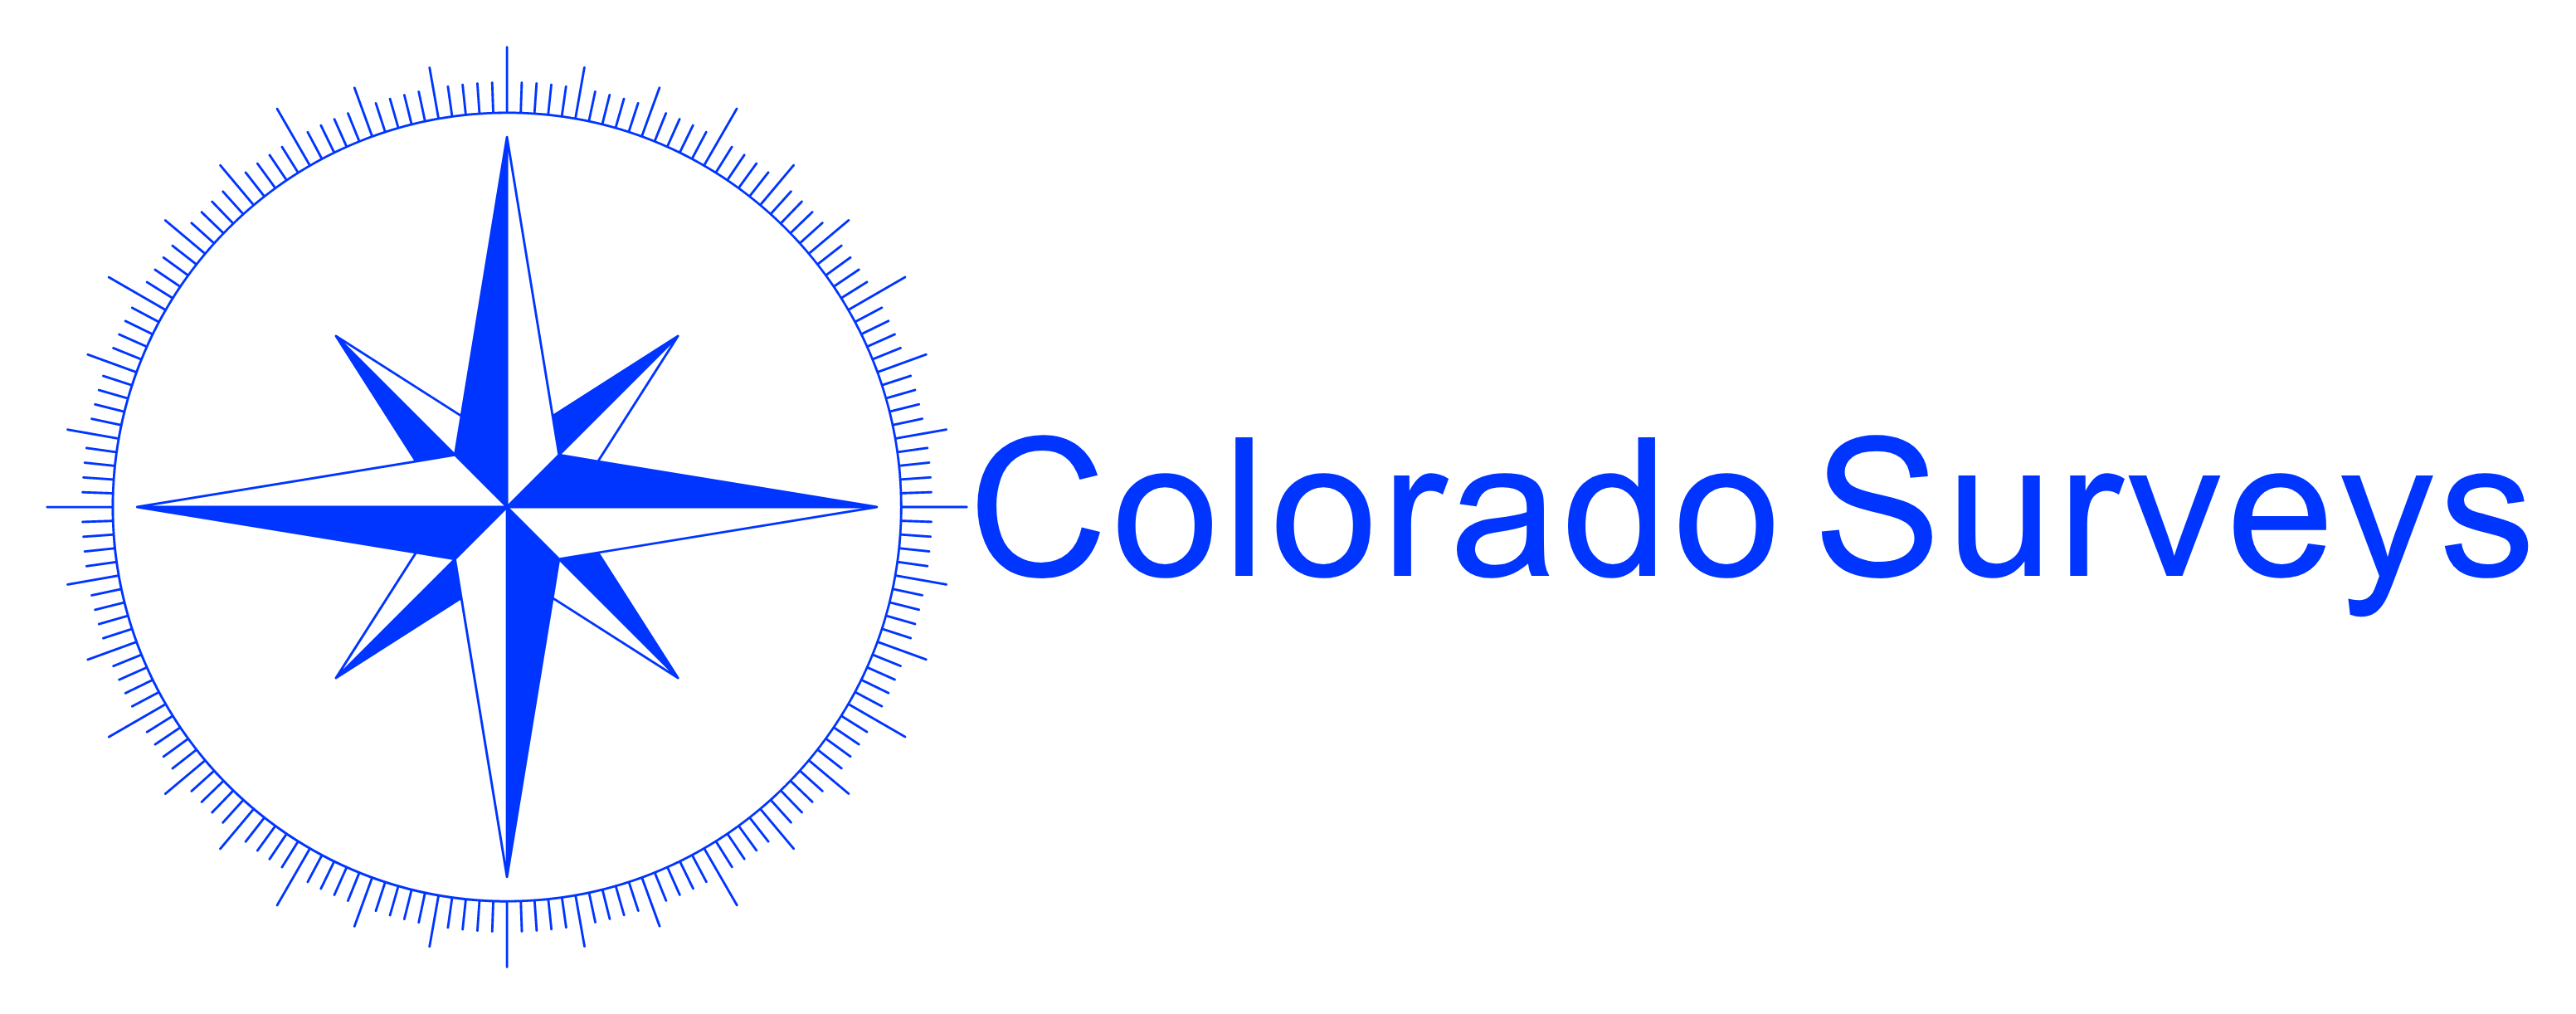 Colorado Surveys 